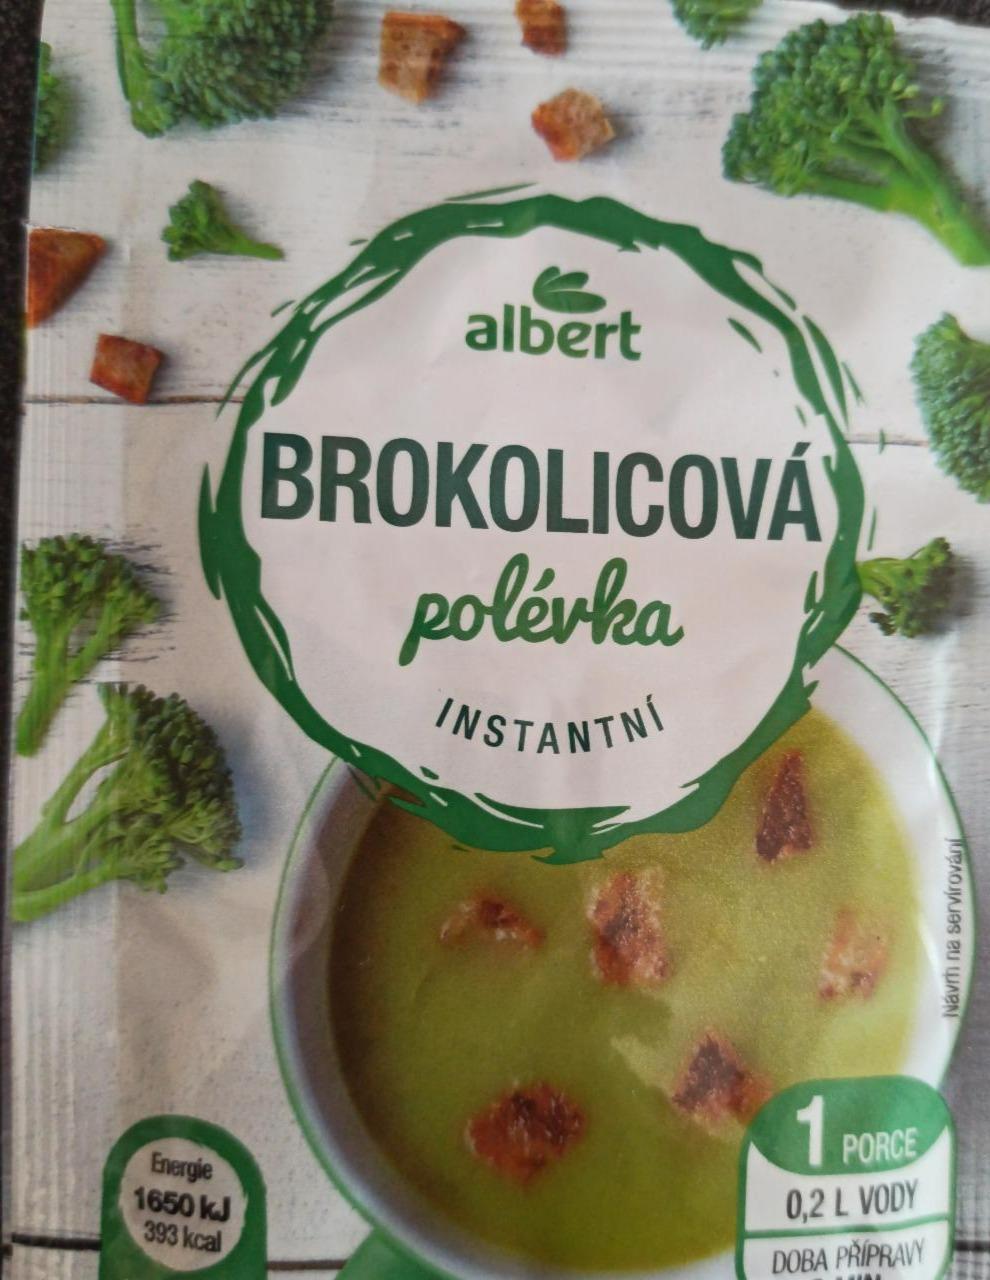 Fotografie - Brokolicová polévka instantní Albert